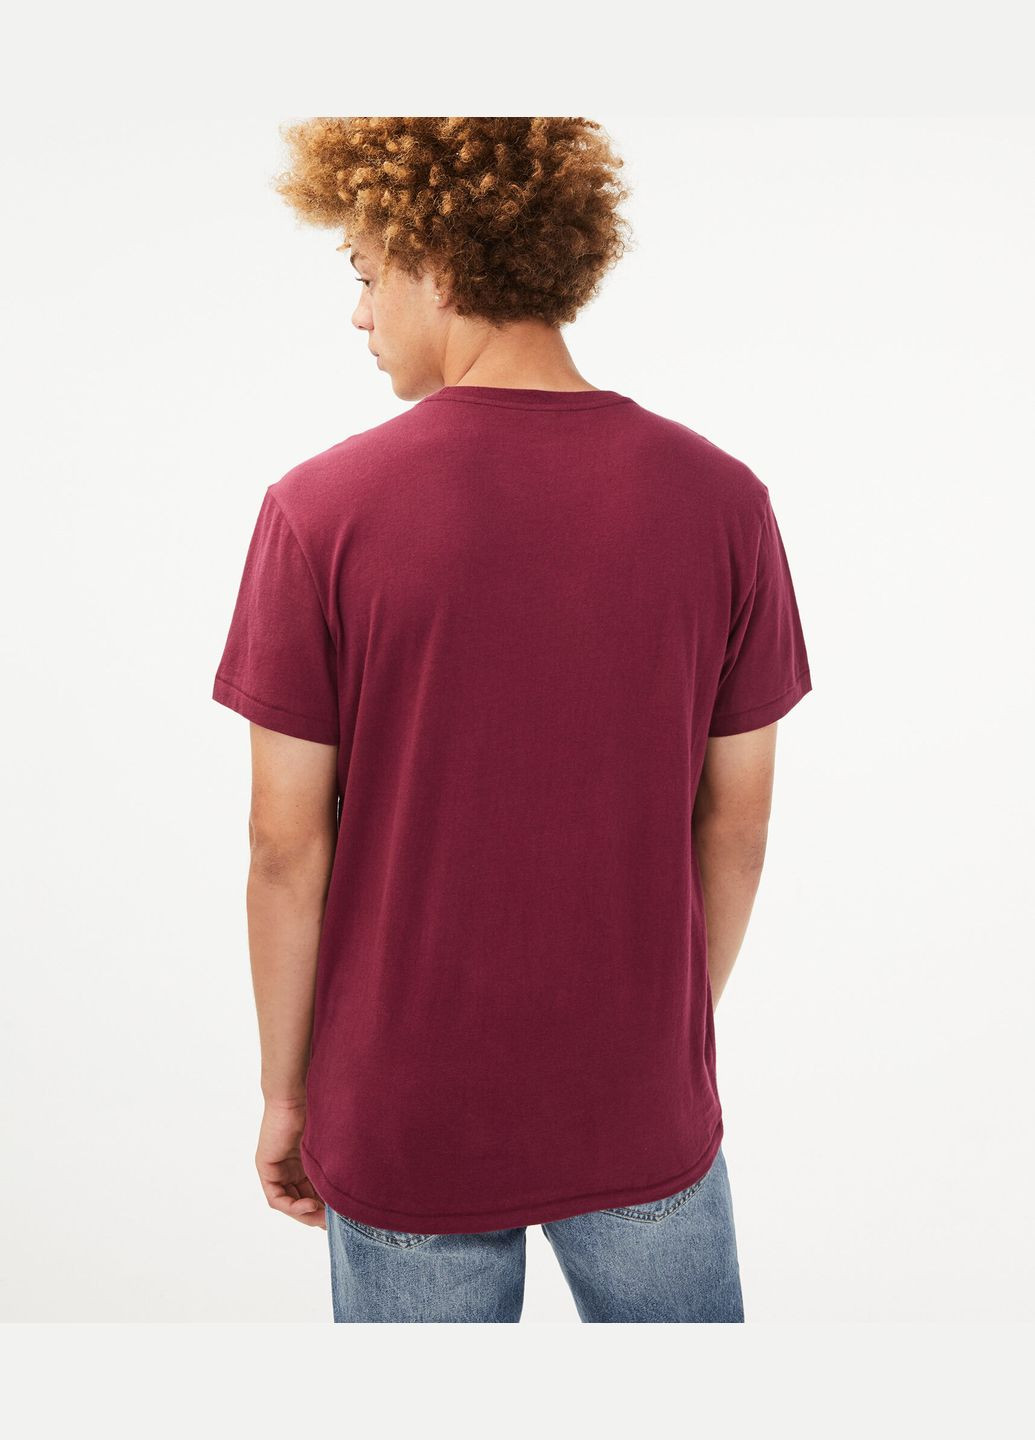 Бордовая бордовая футболка - мужская футболка a0011m Aeropostale